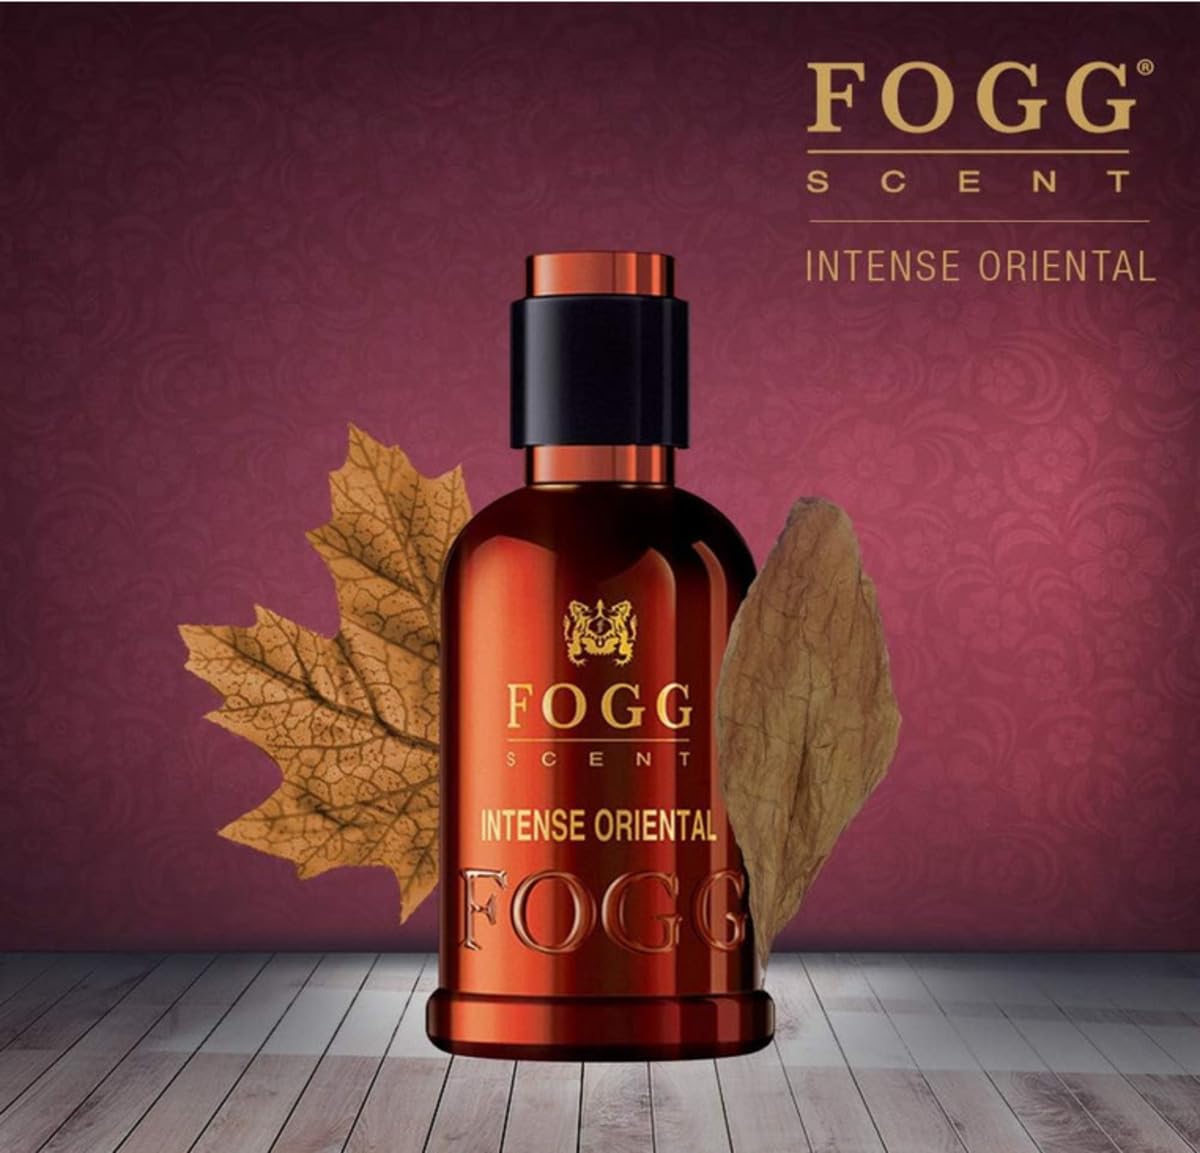 Fogg Scent Intense Oriental for Men - Eau De Parfum - 50ml